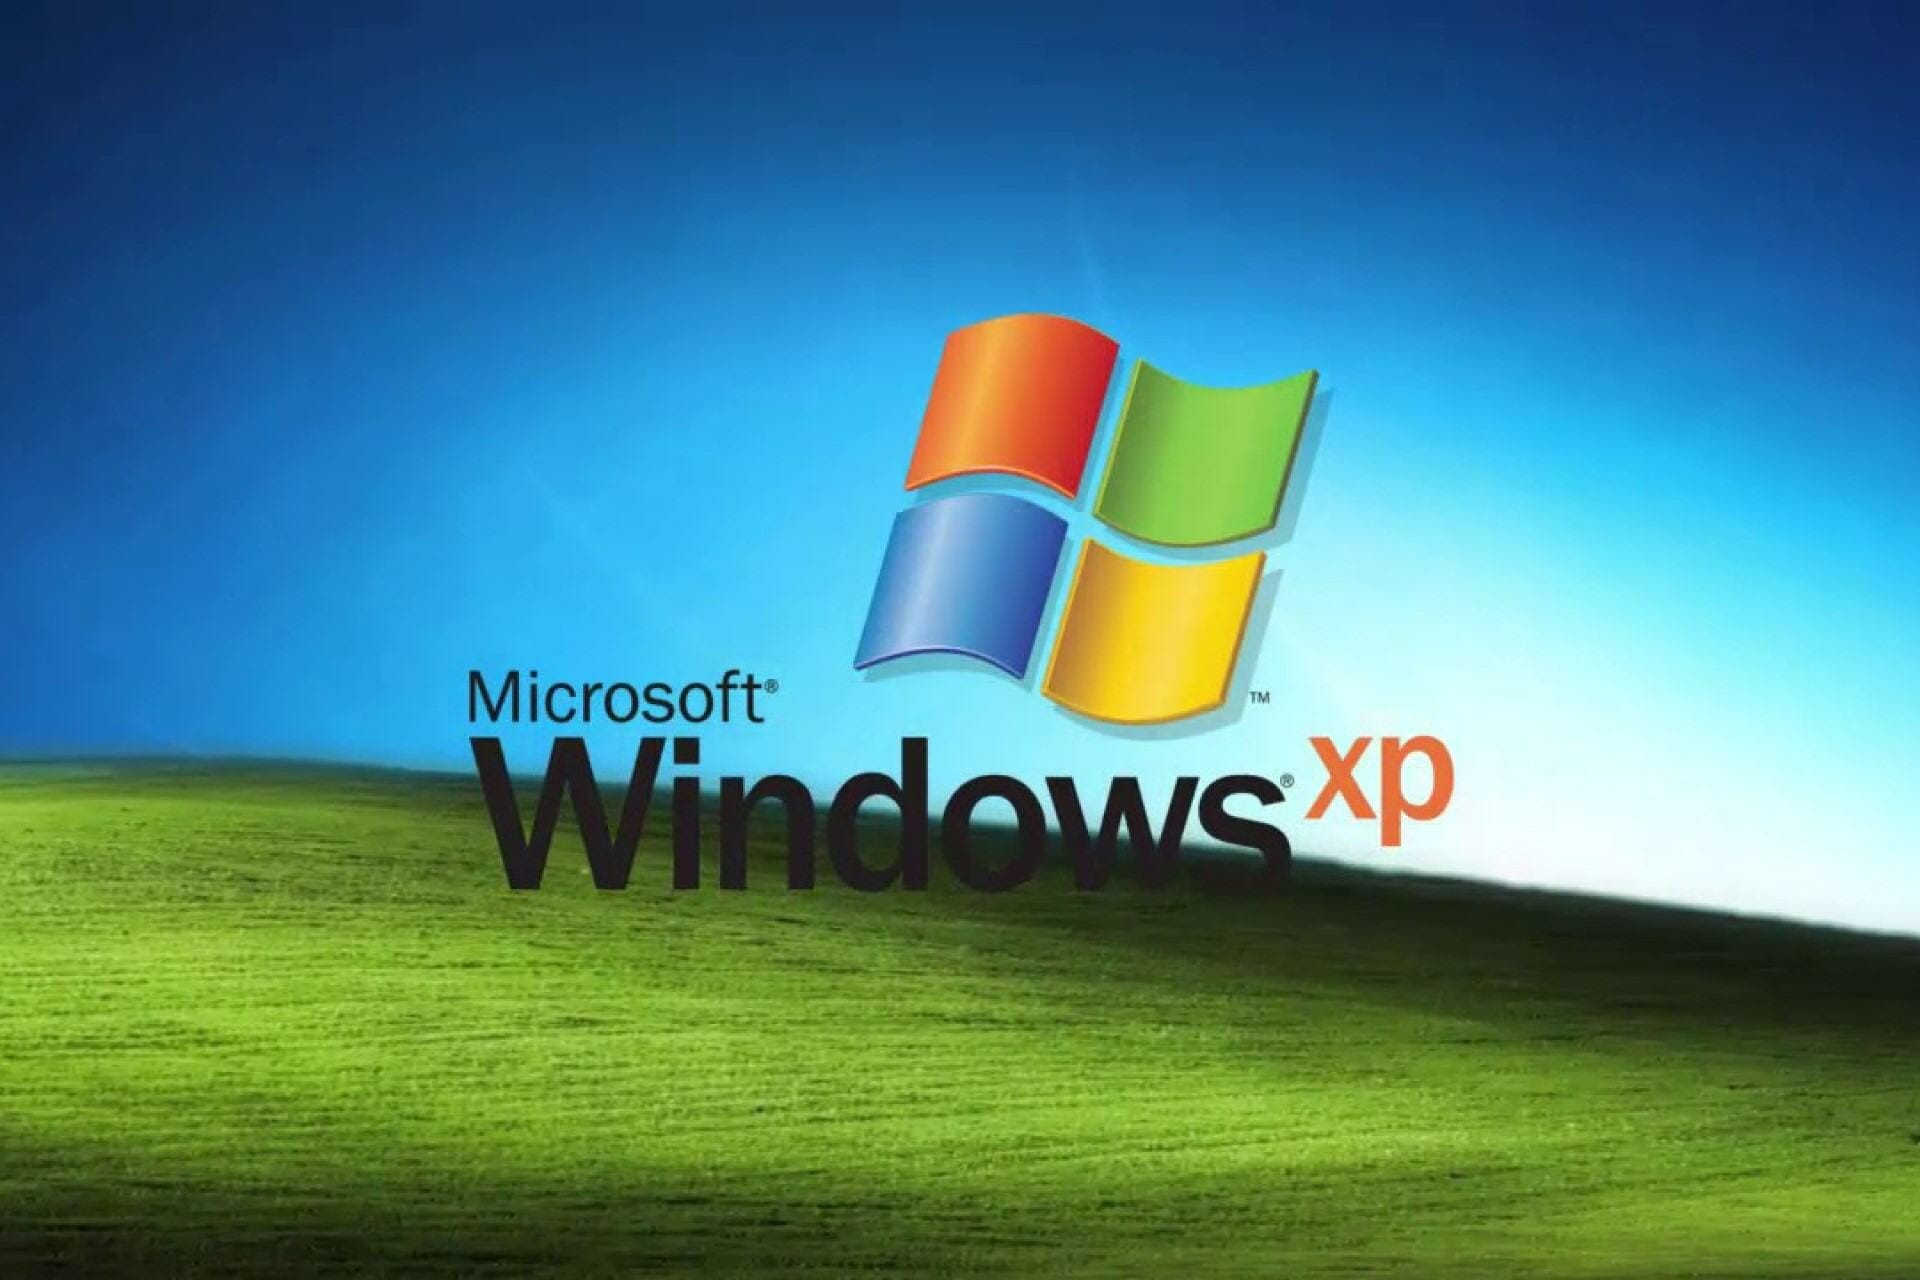 Comment Continuer à Utiliser Windows XP Après Fin de Support